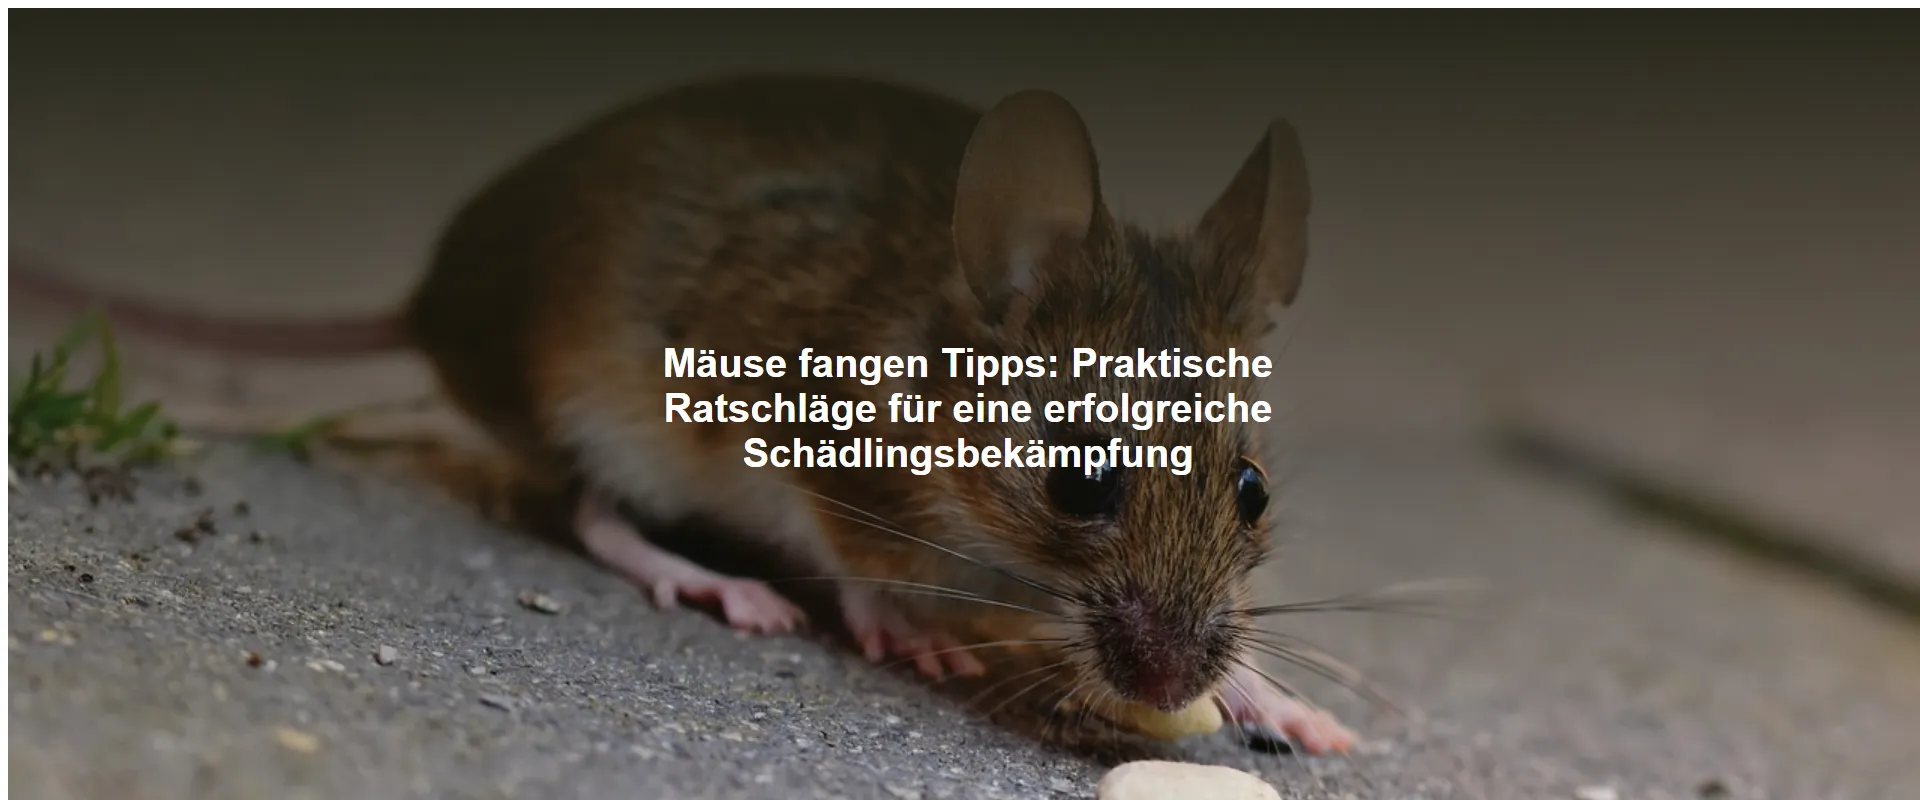 Mäuse fangen Tipps – Praktische Ratschläge für eine erfolgreiche Schädlingsbekämpfung